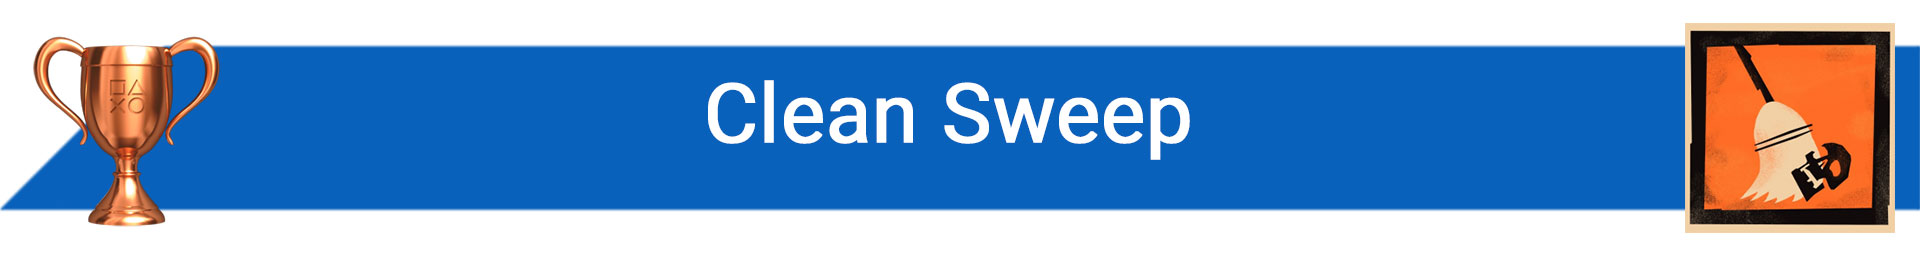 توضیح Clean Sweep